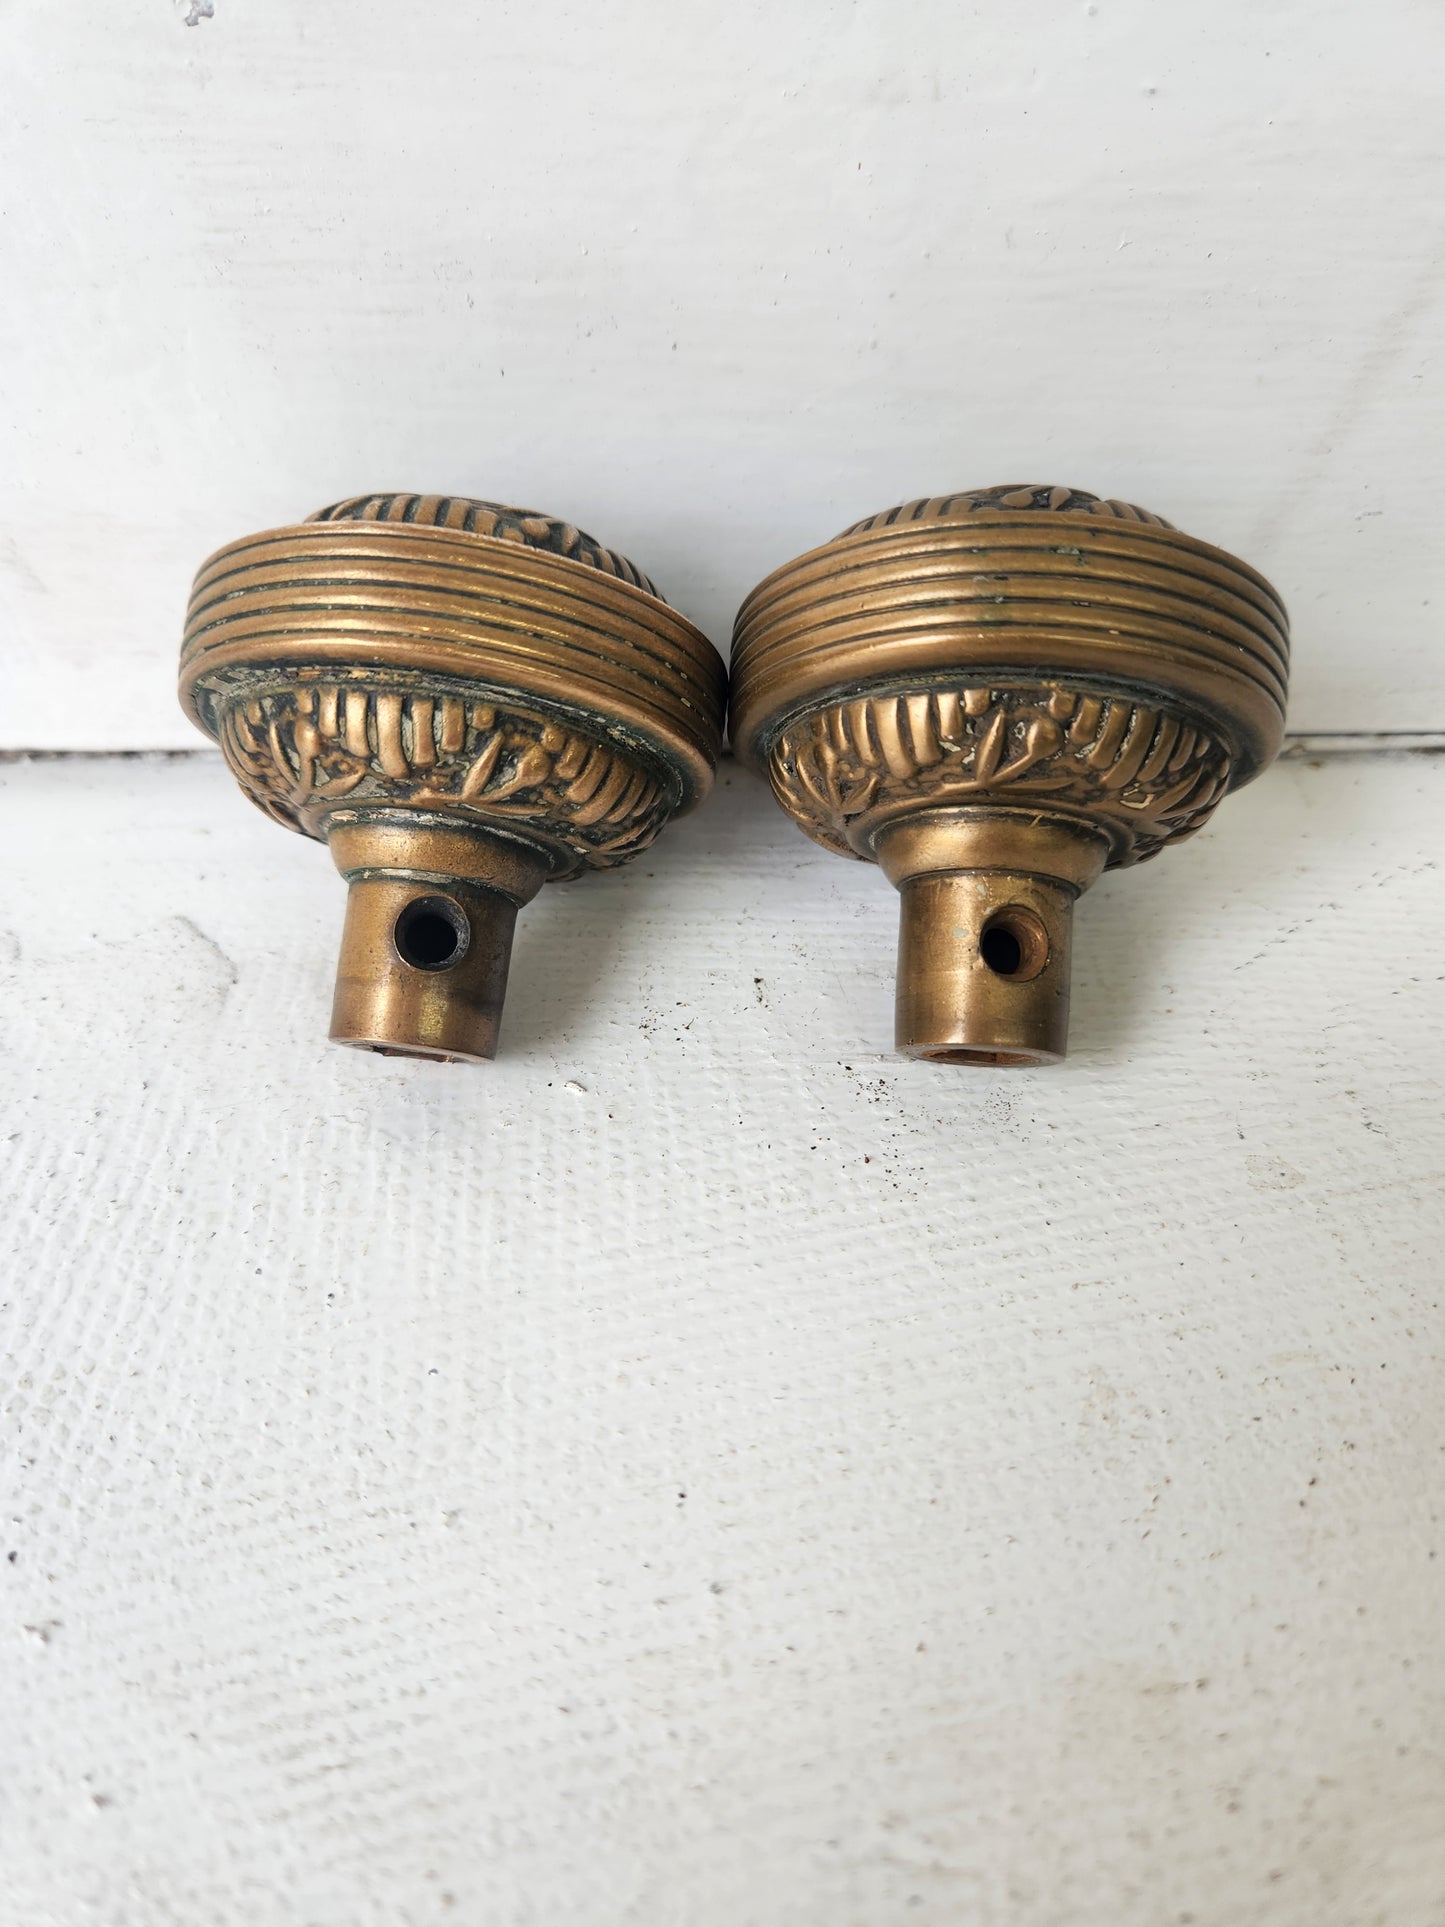 Two Windsor Design Door Knobs, Antique Solid or Cast Bronze Doorknobs, Victorian Hardware Victorian 092104